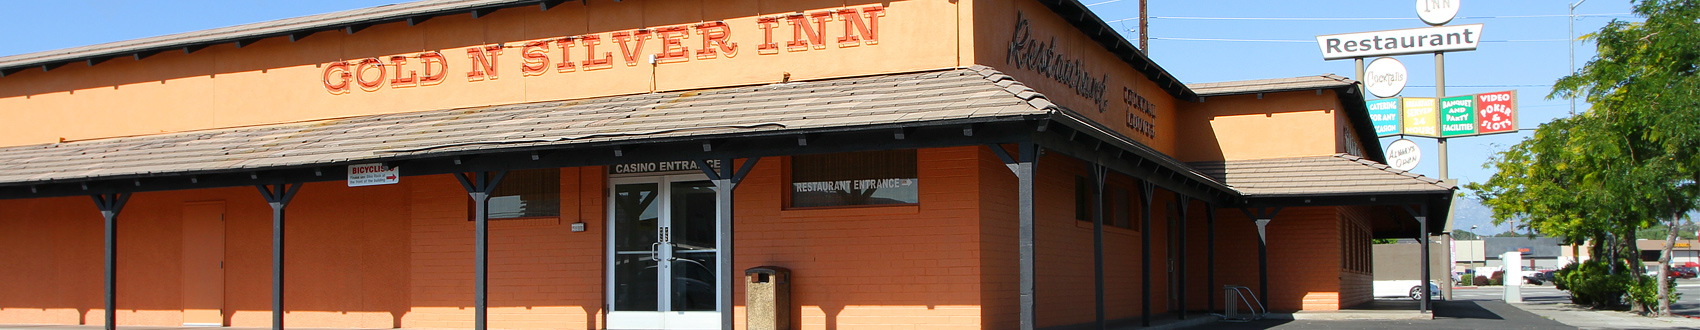 The Gold 'N Silver Inn Reno Nevada